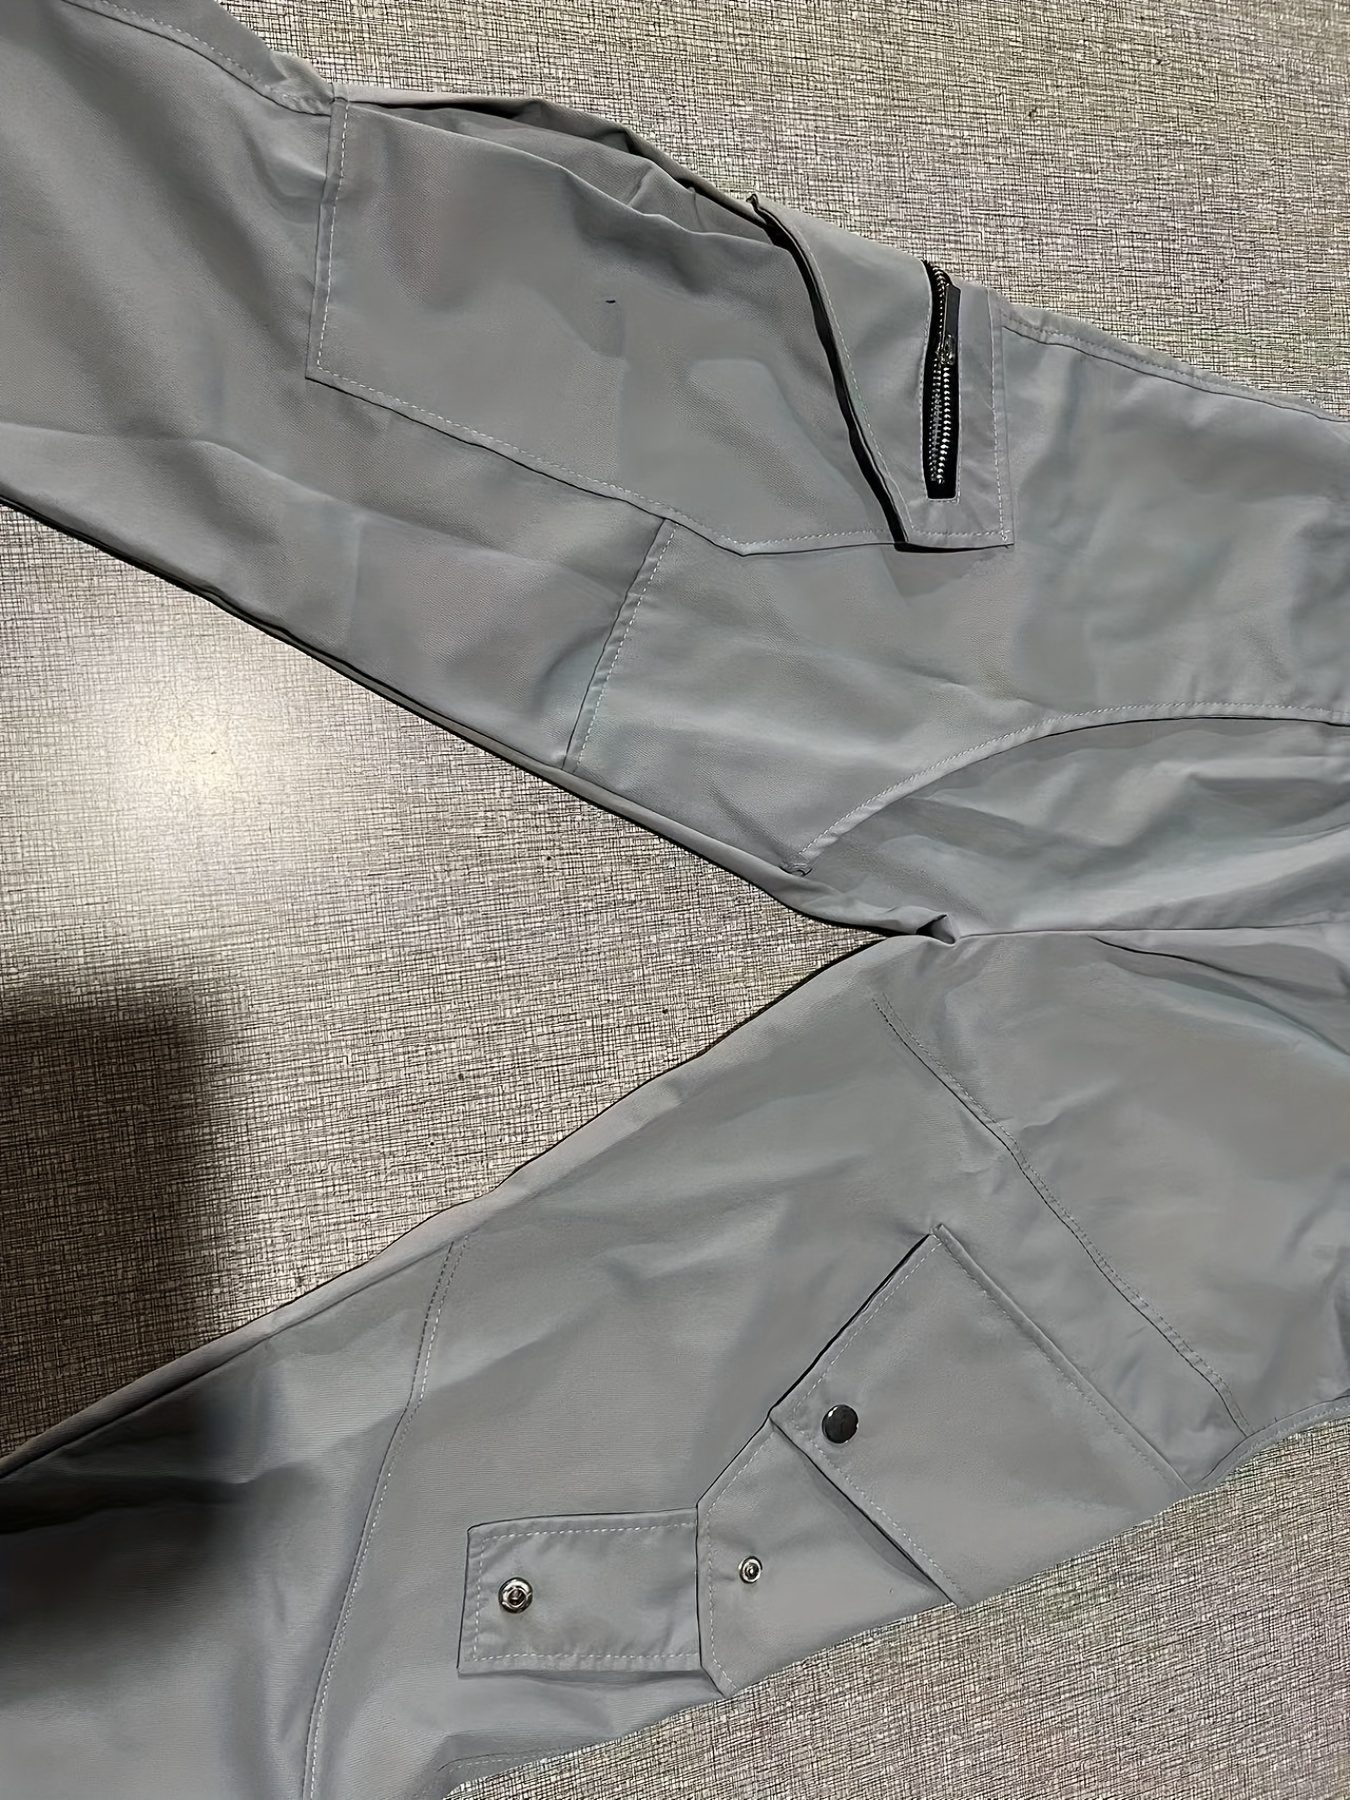 Wozhidaoke Cargo Pants For Men Men Fashion Casual Short Trouser